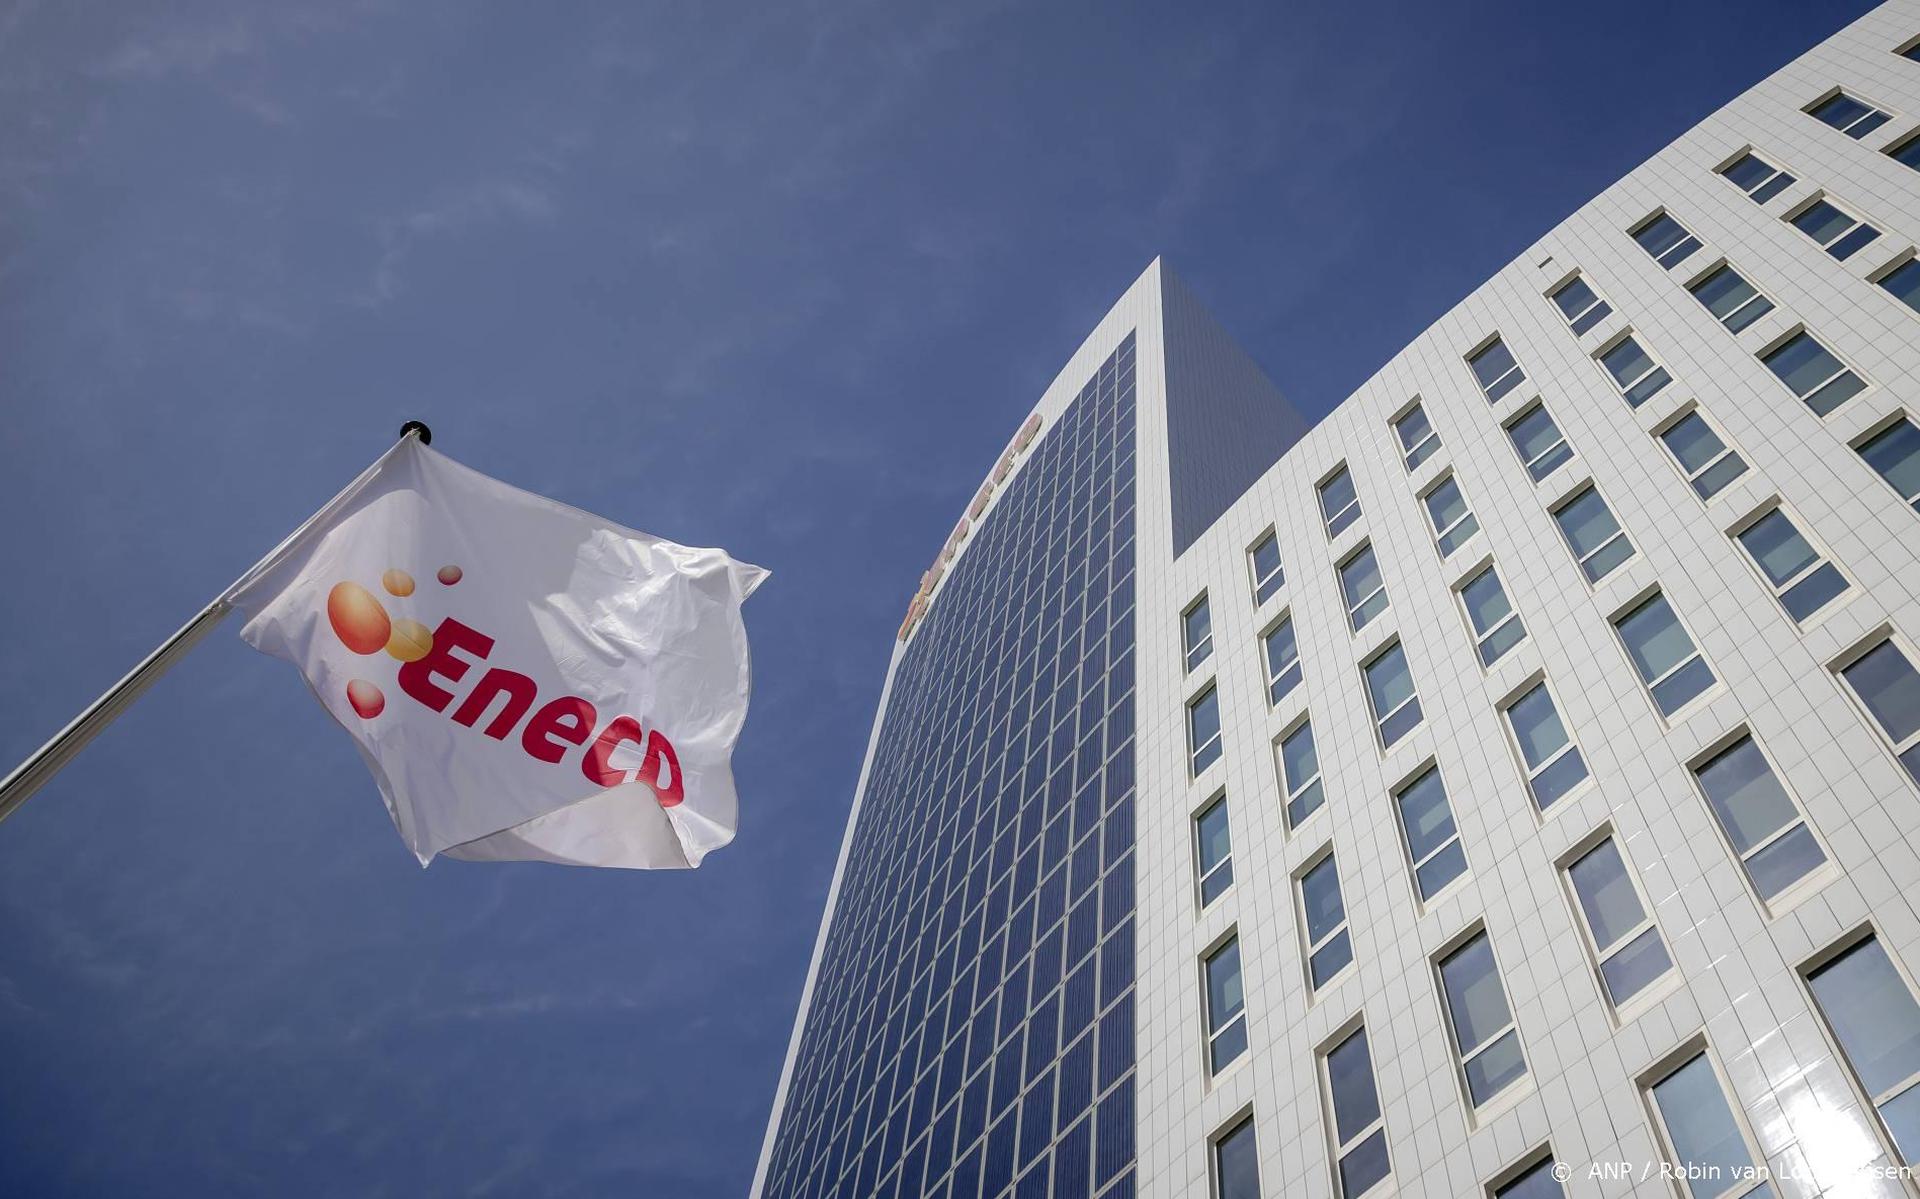 Eneco houdt ondanks oproepen vast aan tariefverhoging 1 oktober